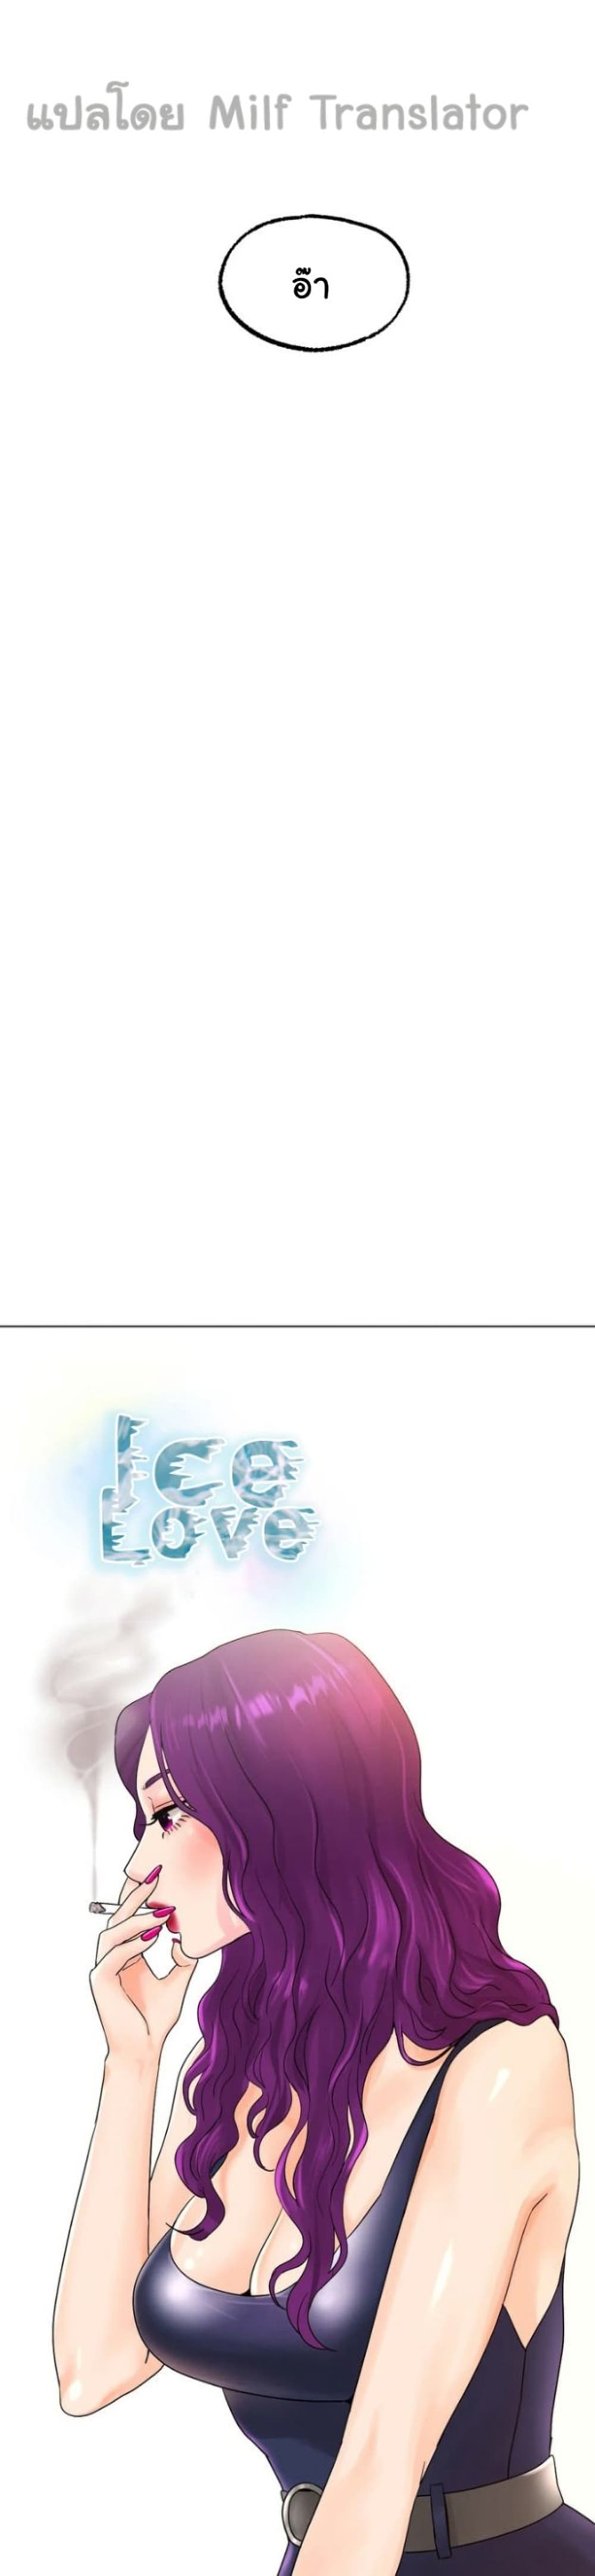 Ice Love 12-12